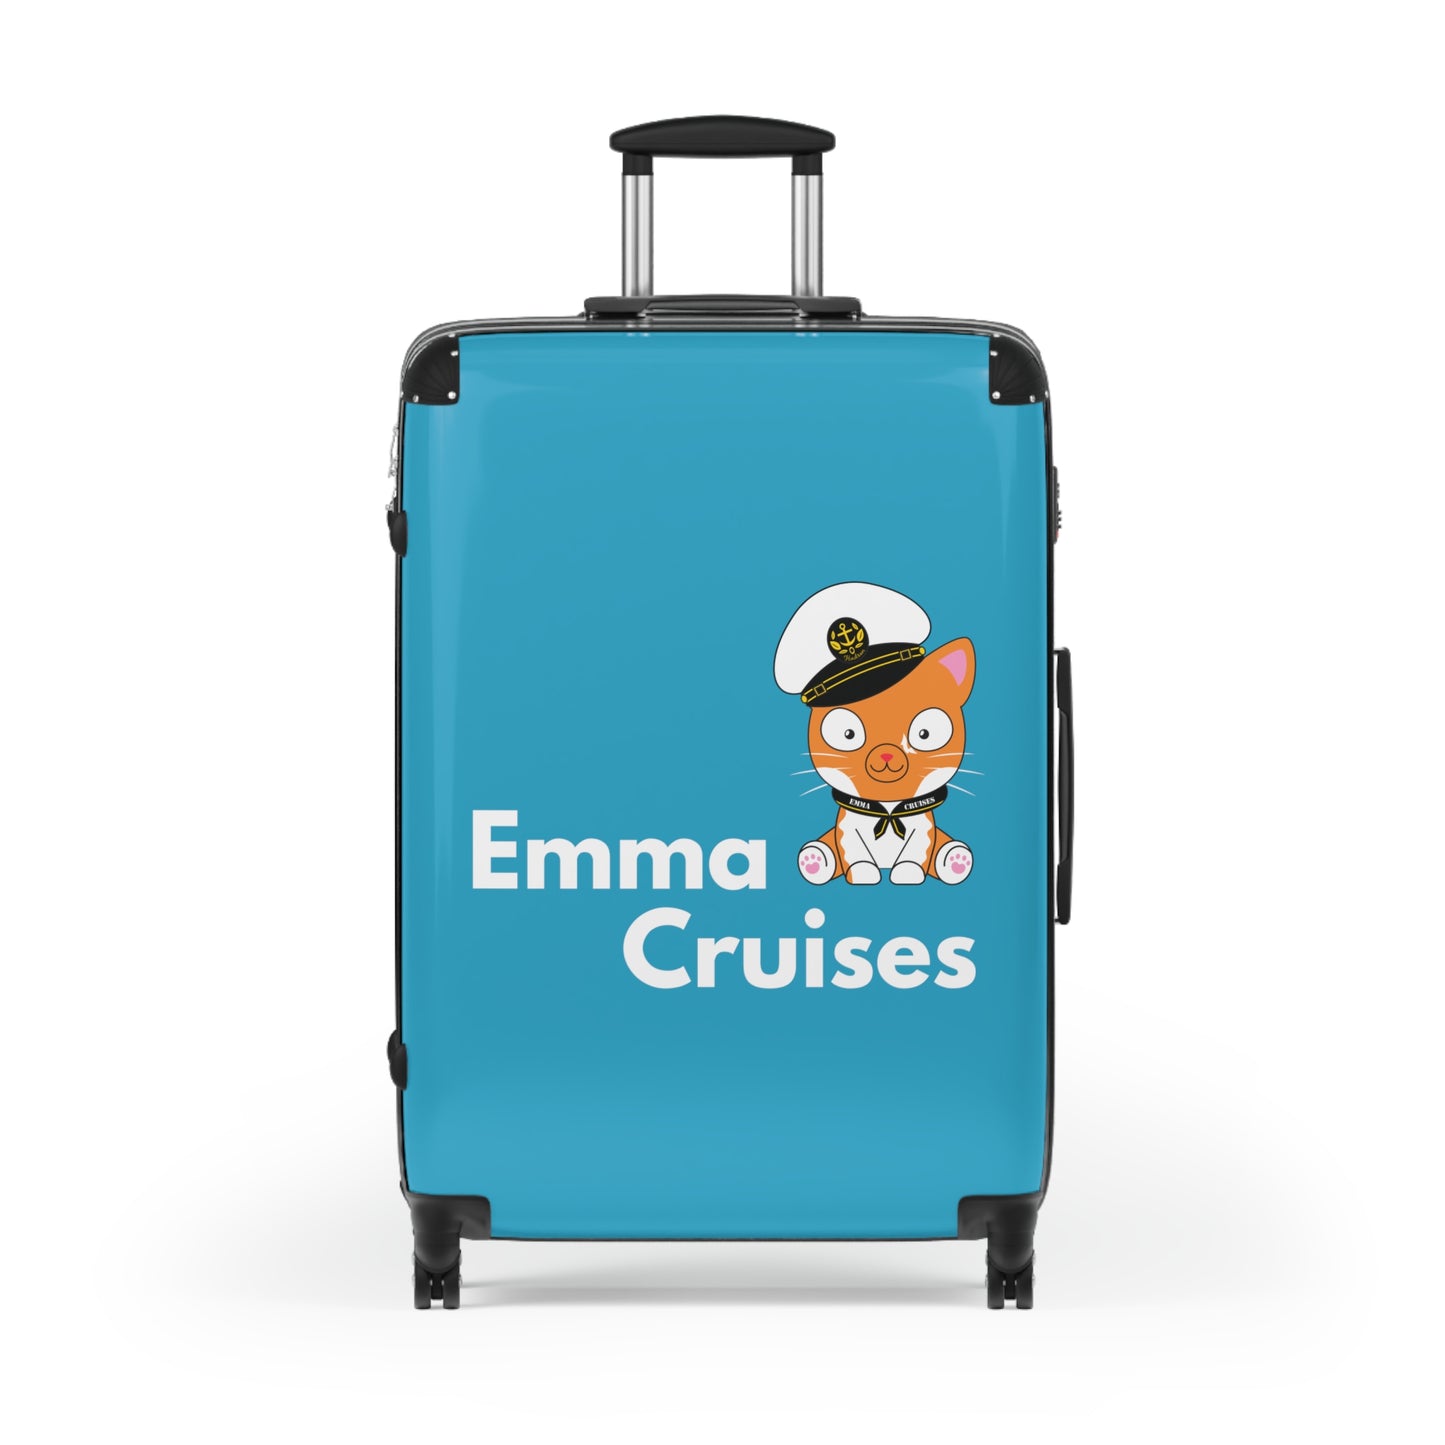 Emma Cruises - Suitcase